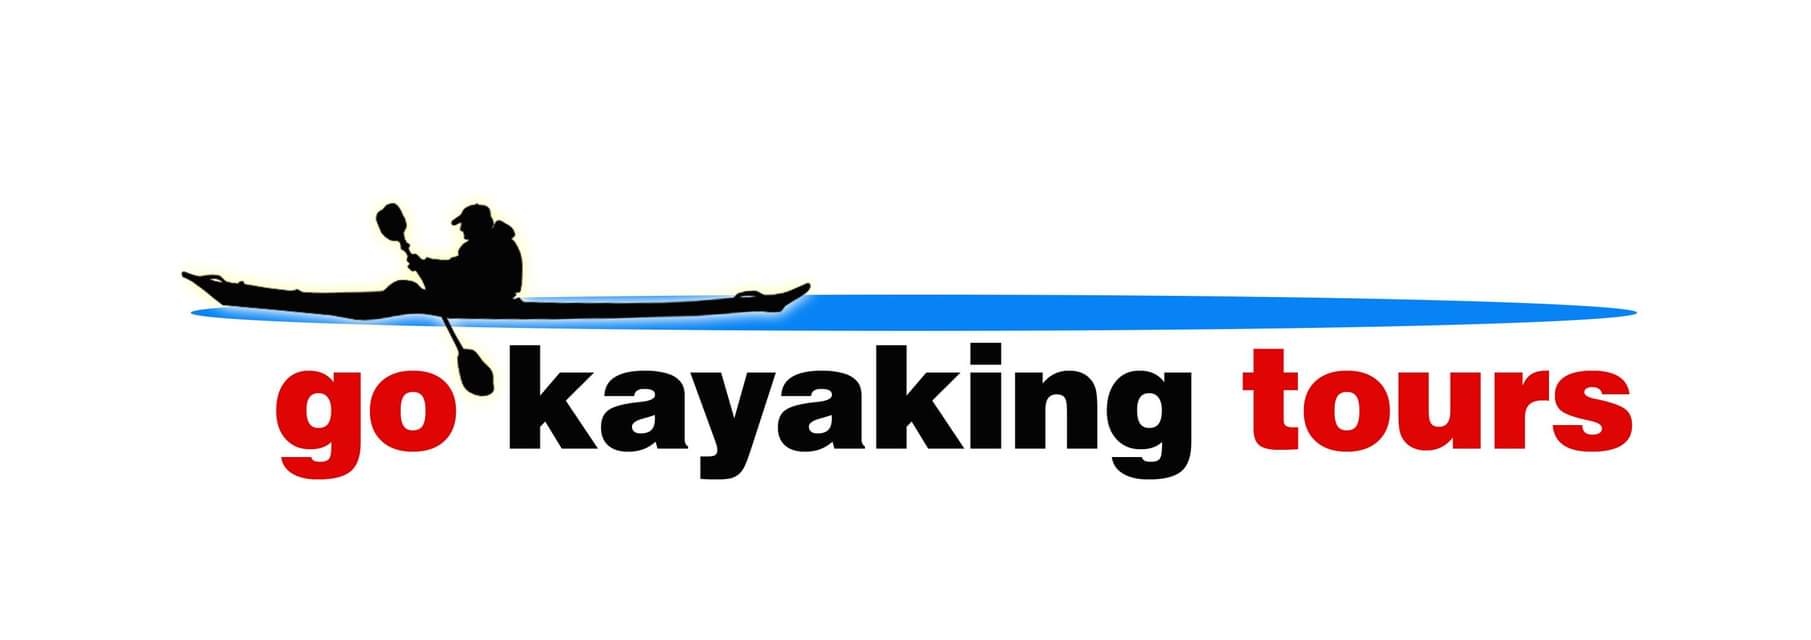 Go Kayaking Tours